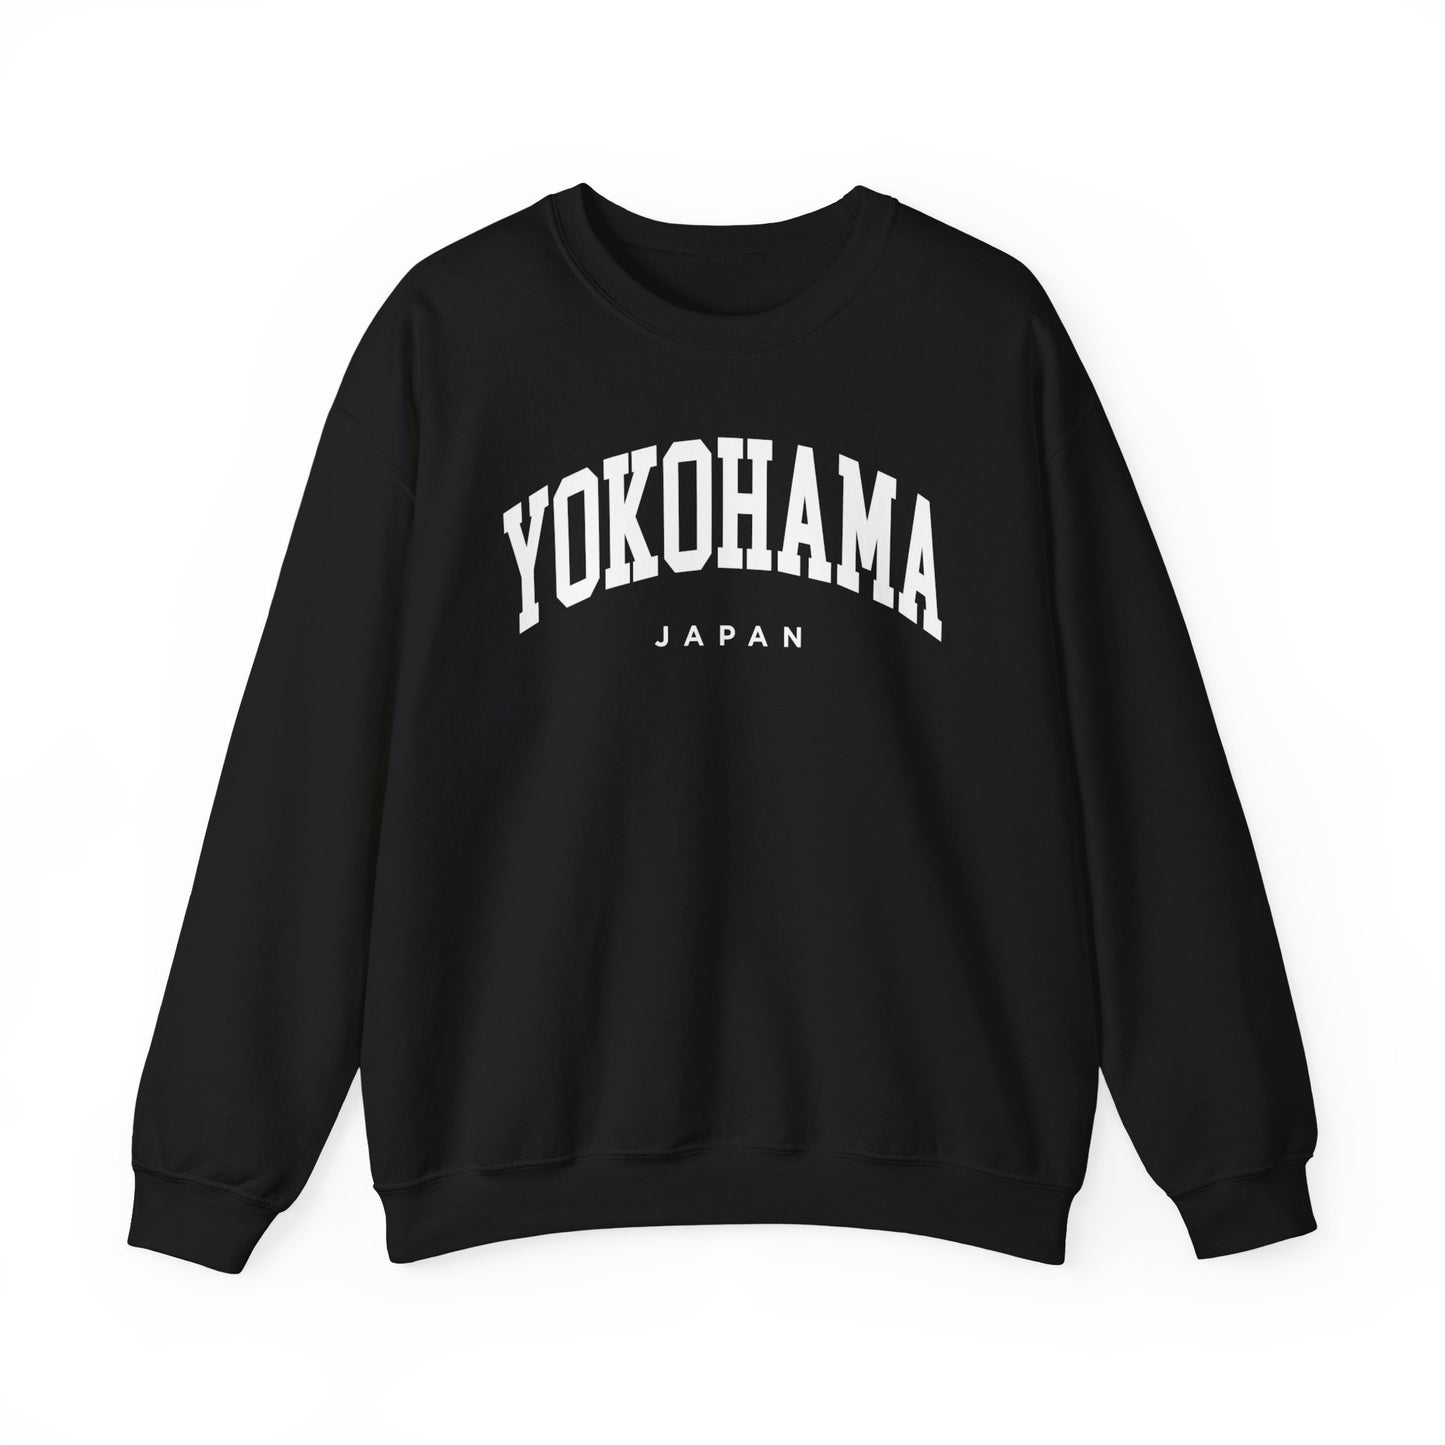 Yokohama Japan Sweatshirt